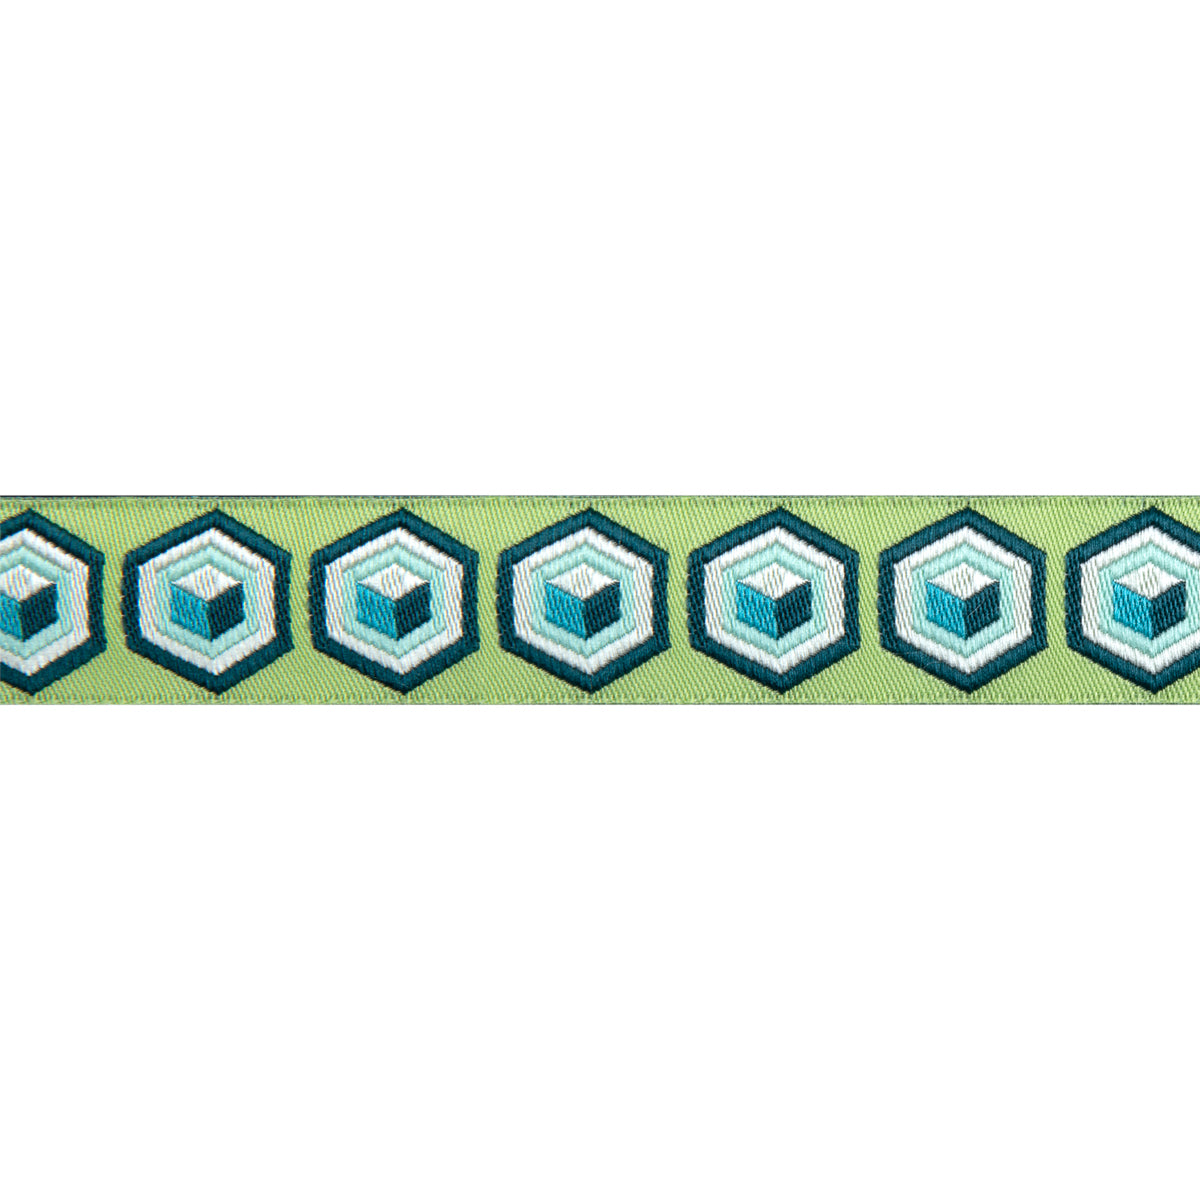 Hexagon Ribbon Trim Green &amp; Blue 7/8&quot; - Tula Pink - PER QUARTER METRE